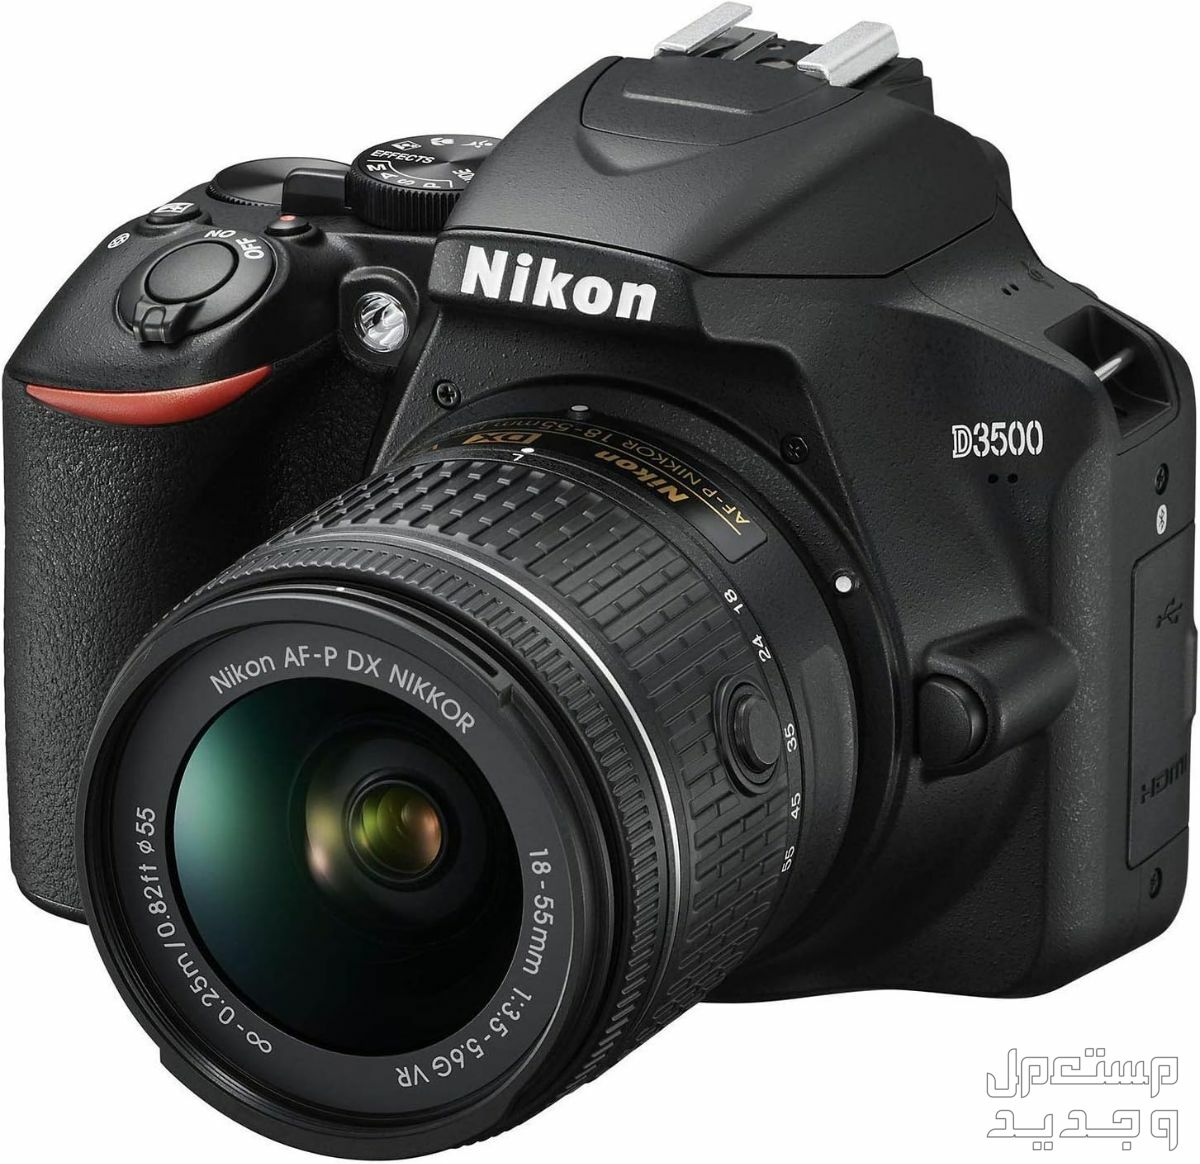 10 كاميرات تصوير ماركات عالمية بأسعار رخيصة في اليَمَن مميزات كاميرا Nikon D3500